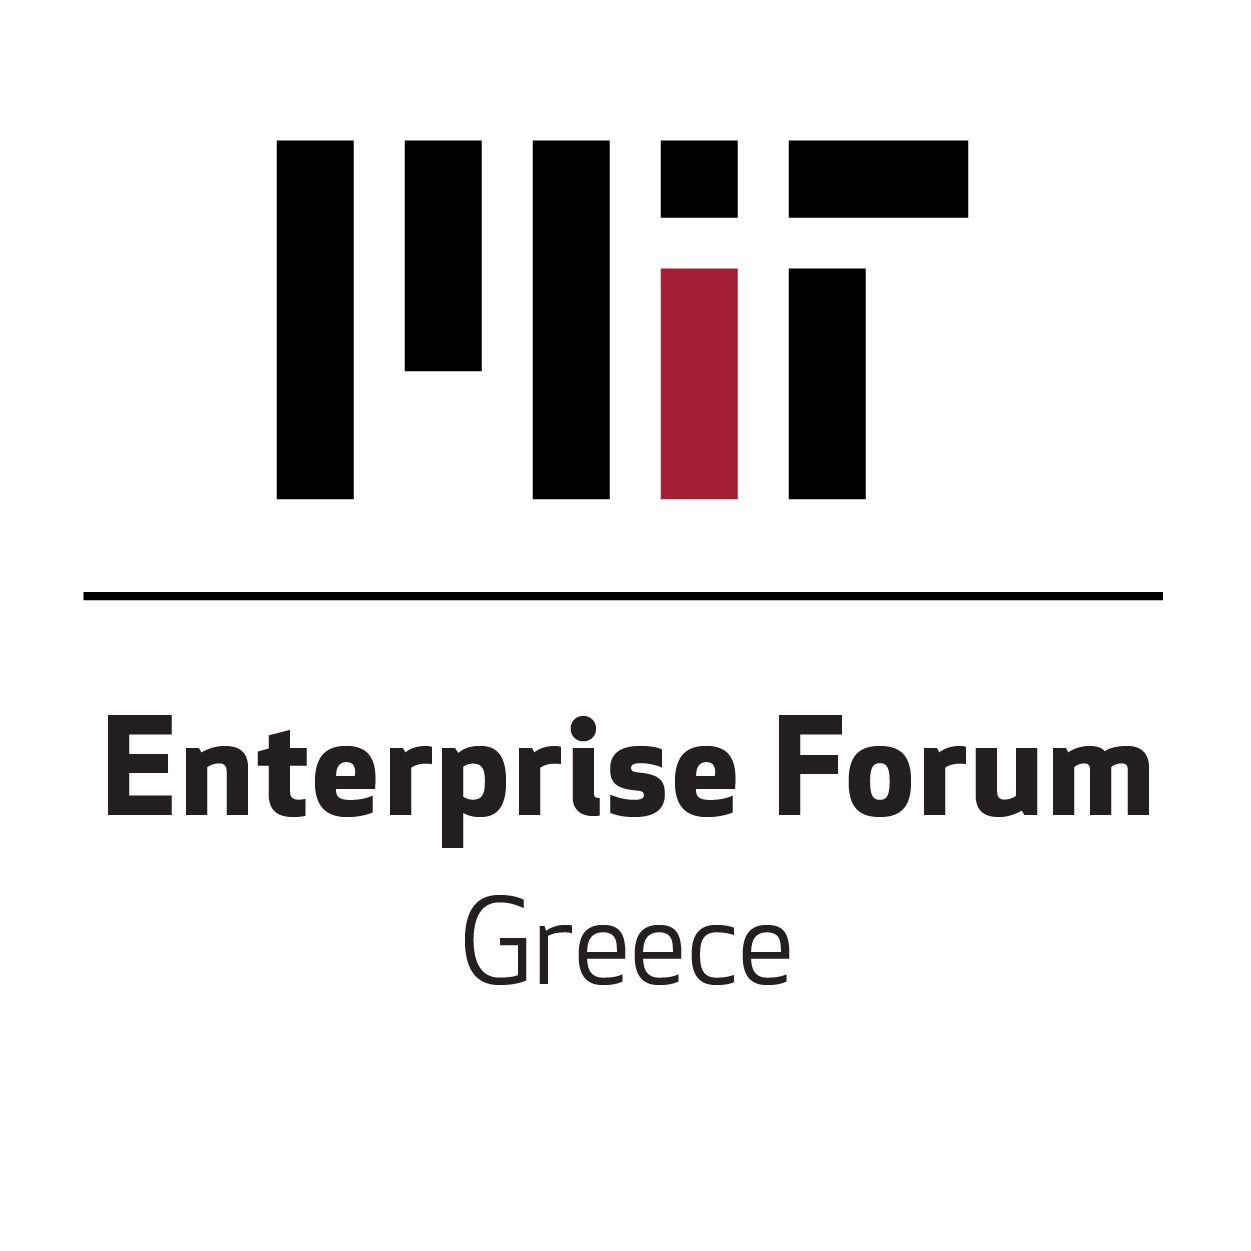 Enterprise Forum Greece